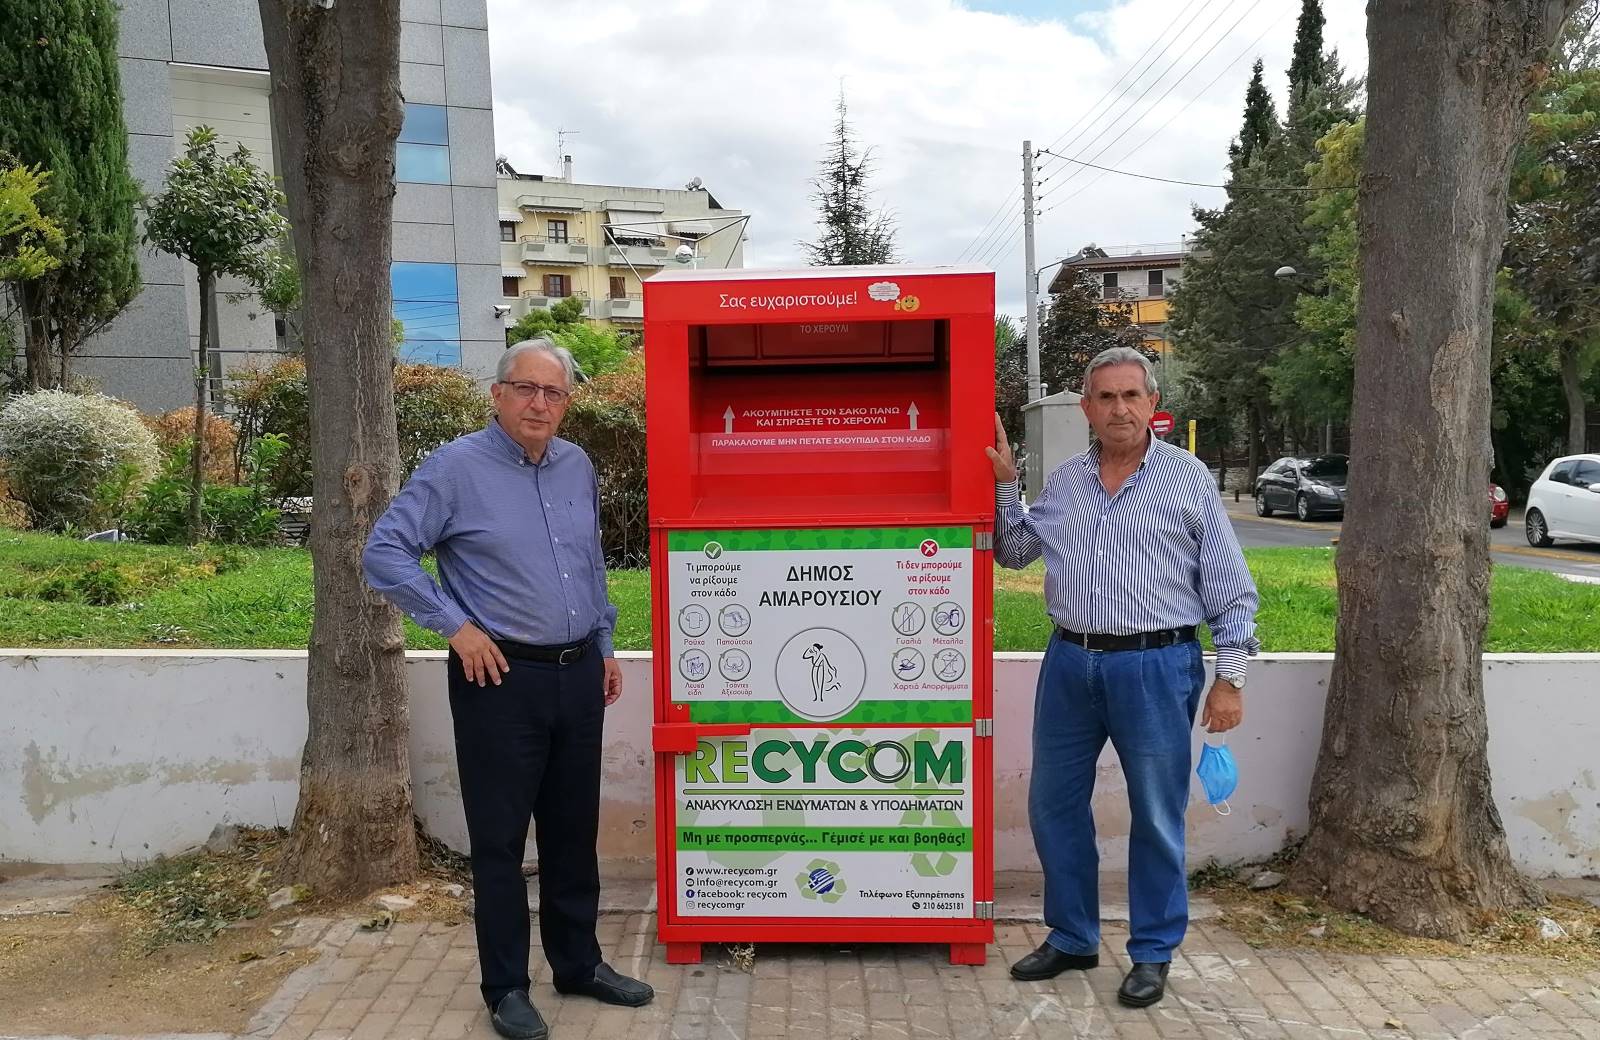 Δήμος Αμαρουσίου - Επεκτείνεται το δίκτυο εναλλακτικής ανακύκλωσης